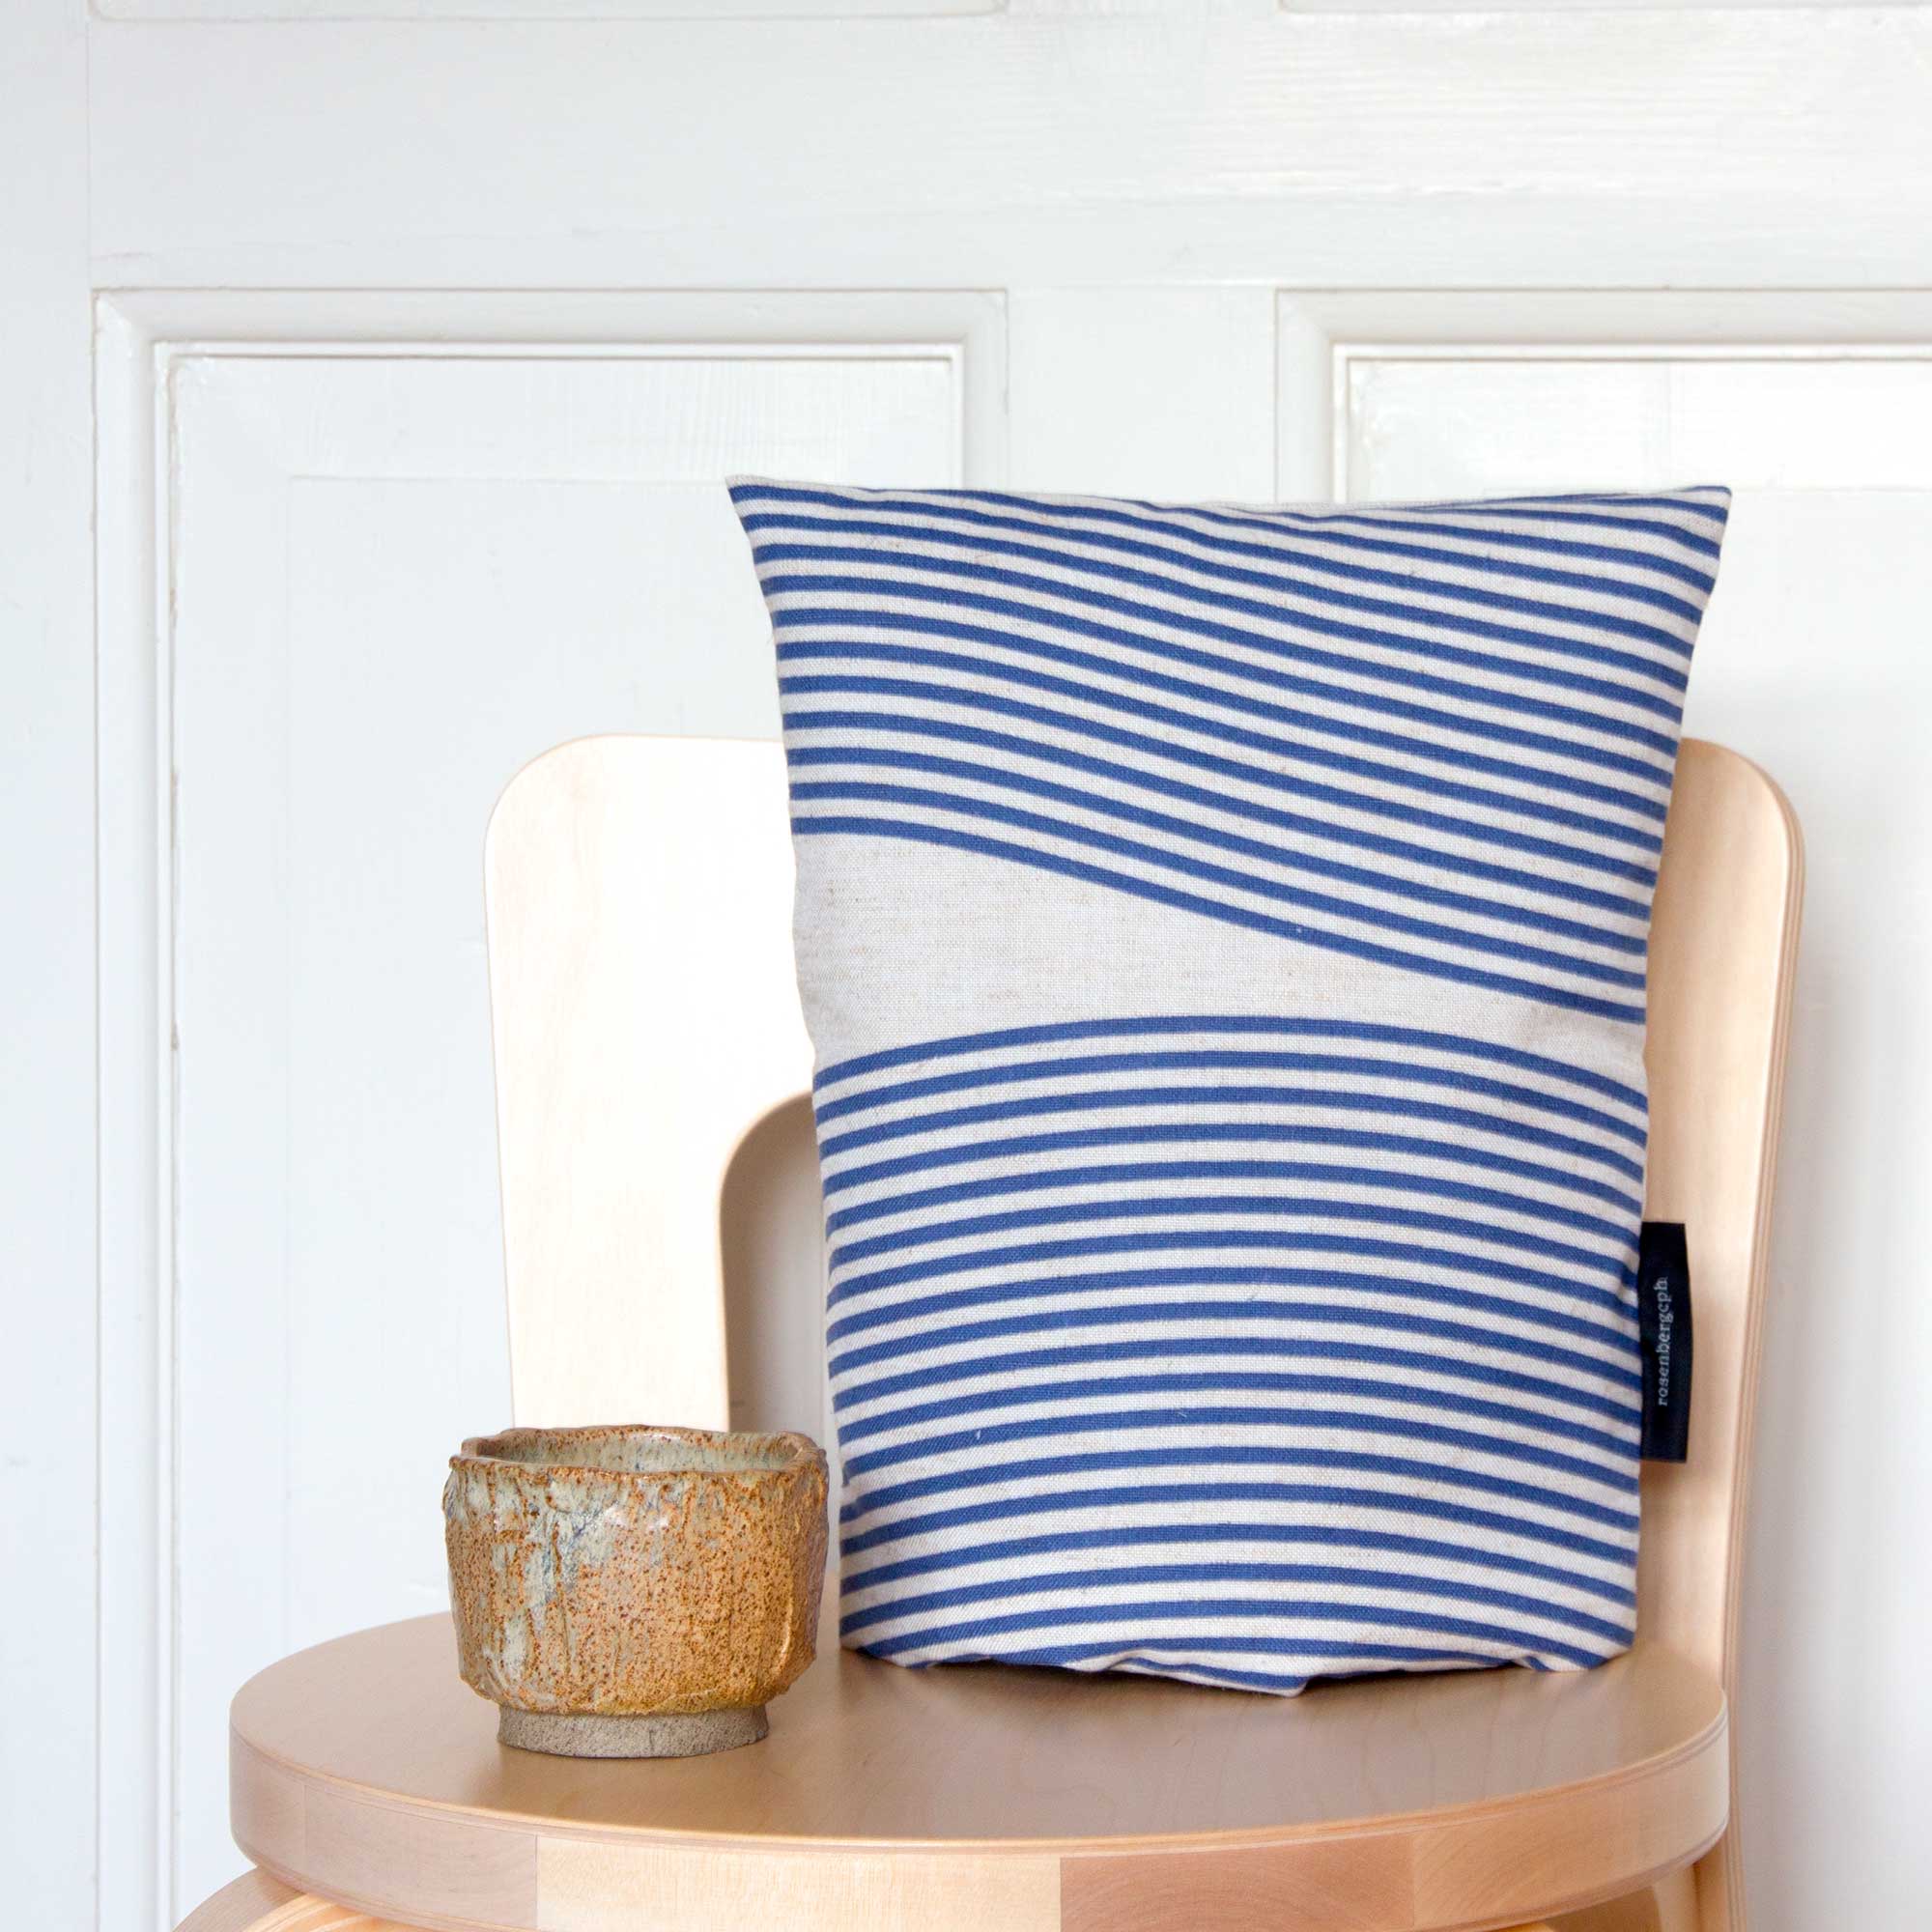 Coffee cosy, River blue, linen/polyester, design by Anne Rosenberg, RosenbergCph